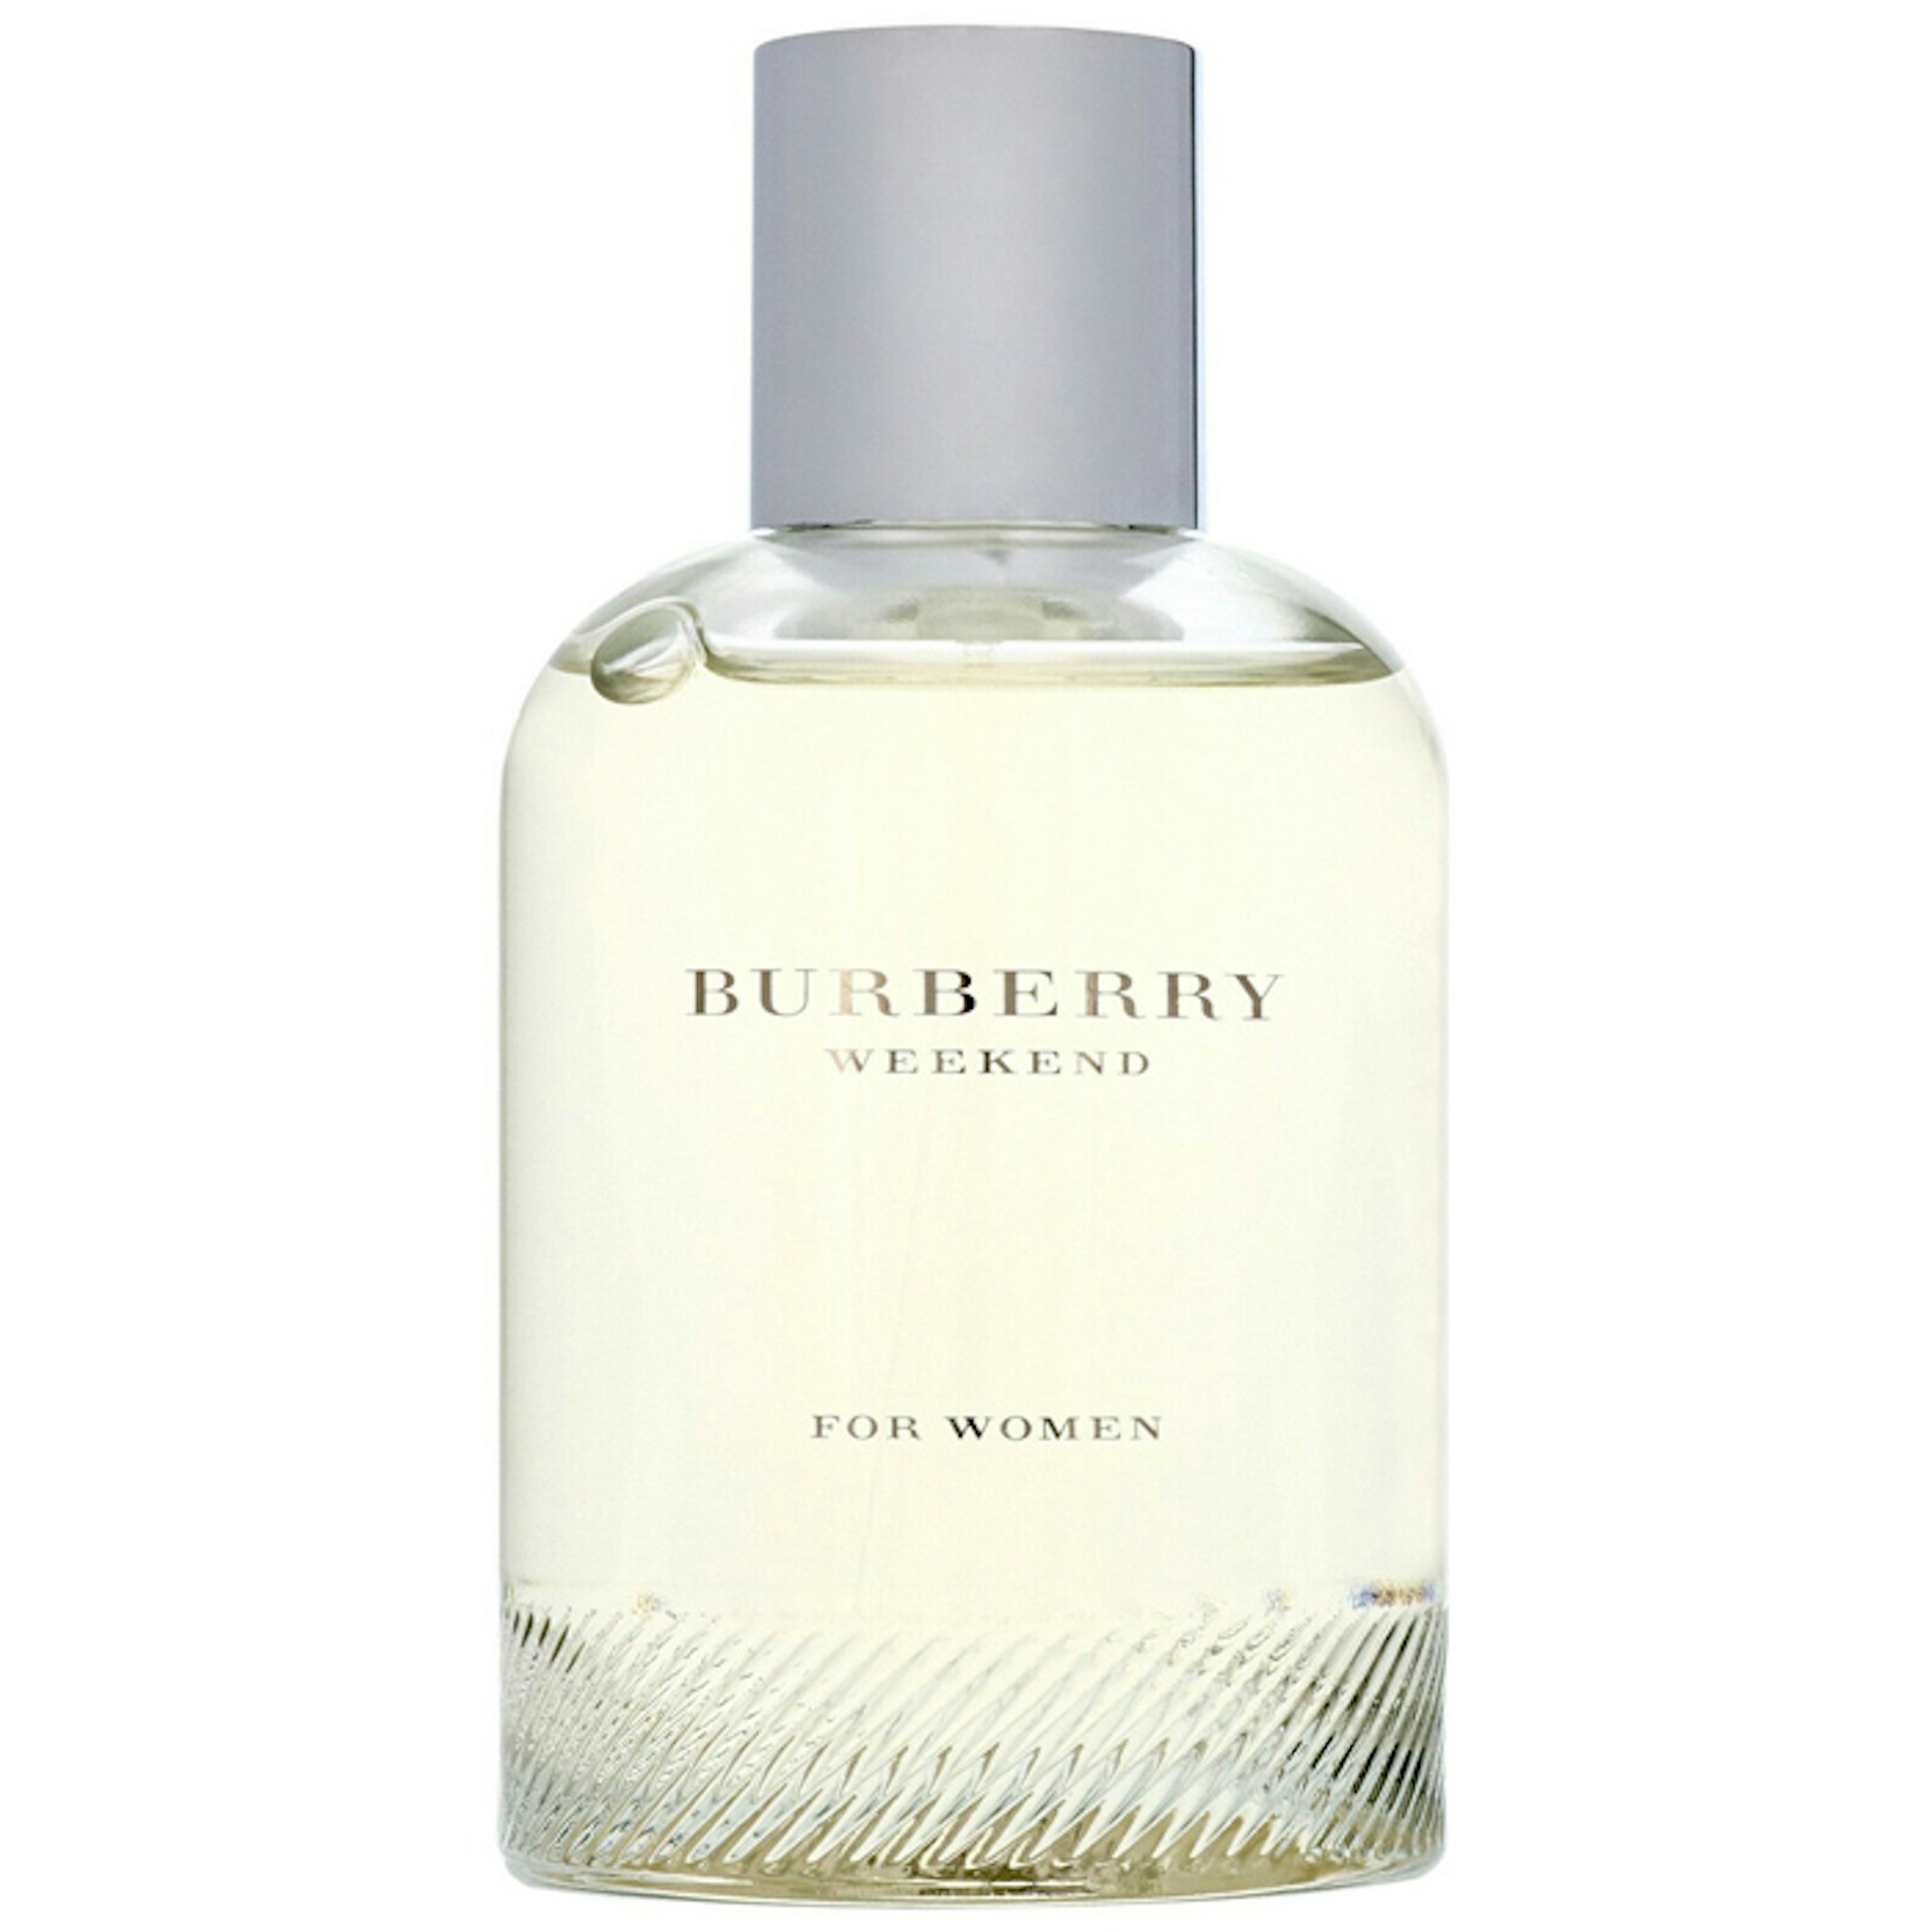 Actualizar 91+ imagen burberry perfume weekend - Abzlocal.mx